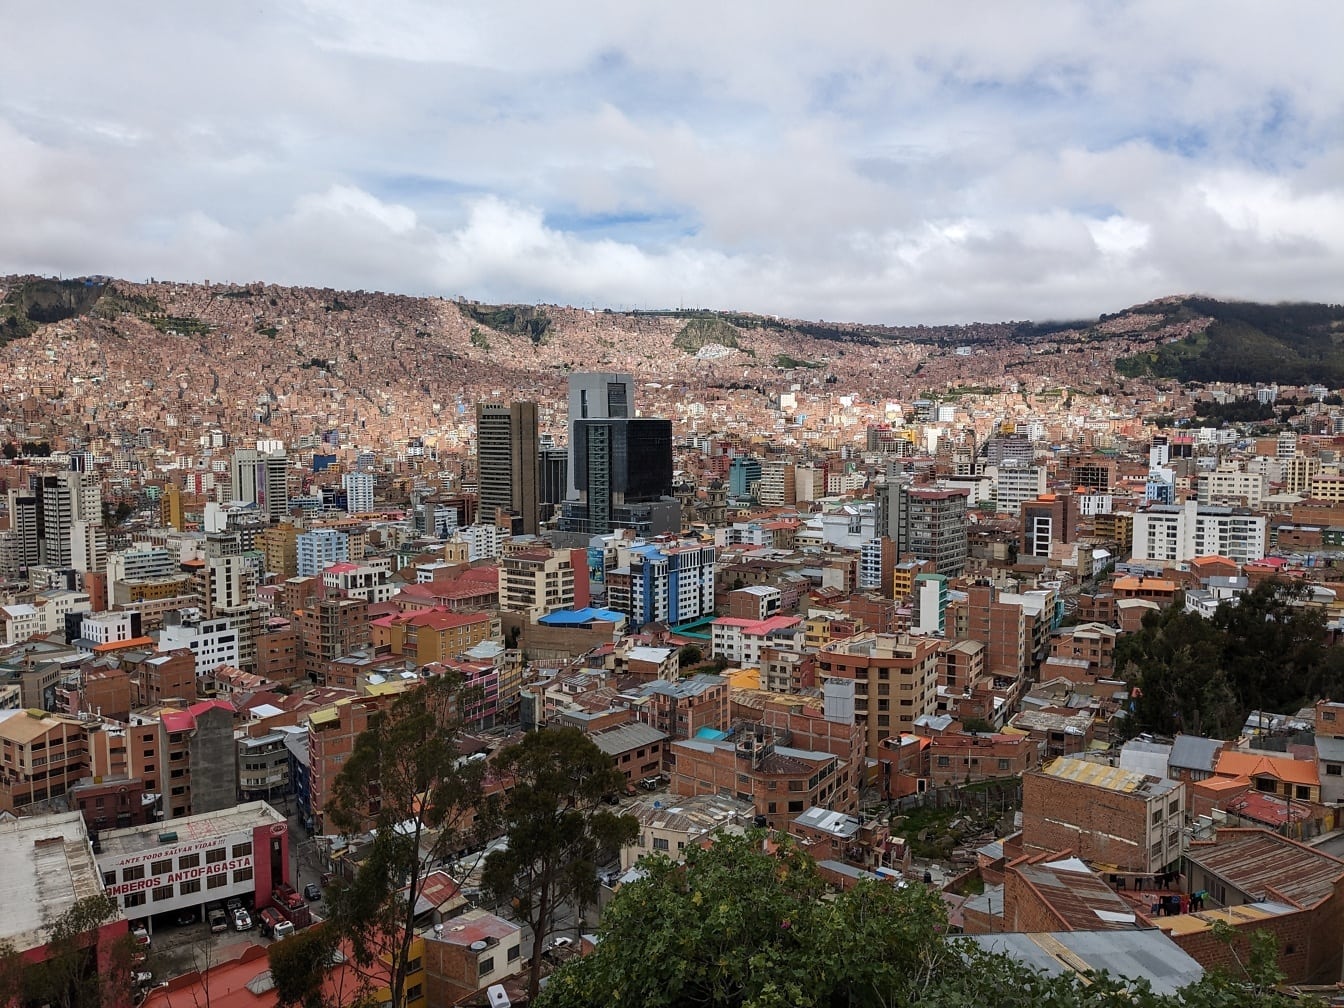 Paisaje urbano panorámico del Mirador Killi Killi con la ciudad de La Paz en Bolivia con muchos edificios